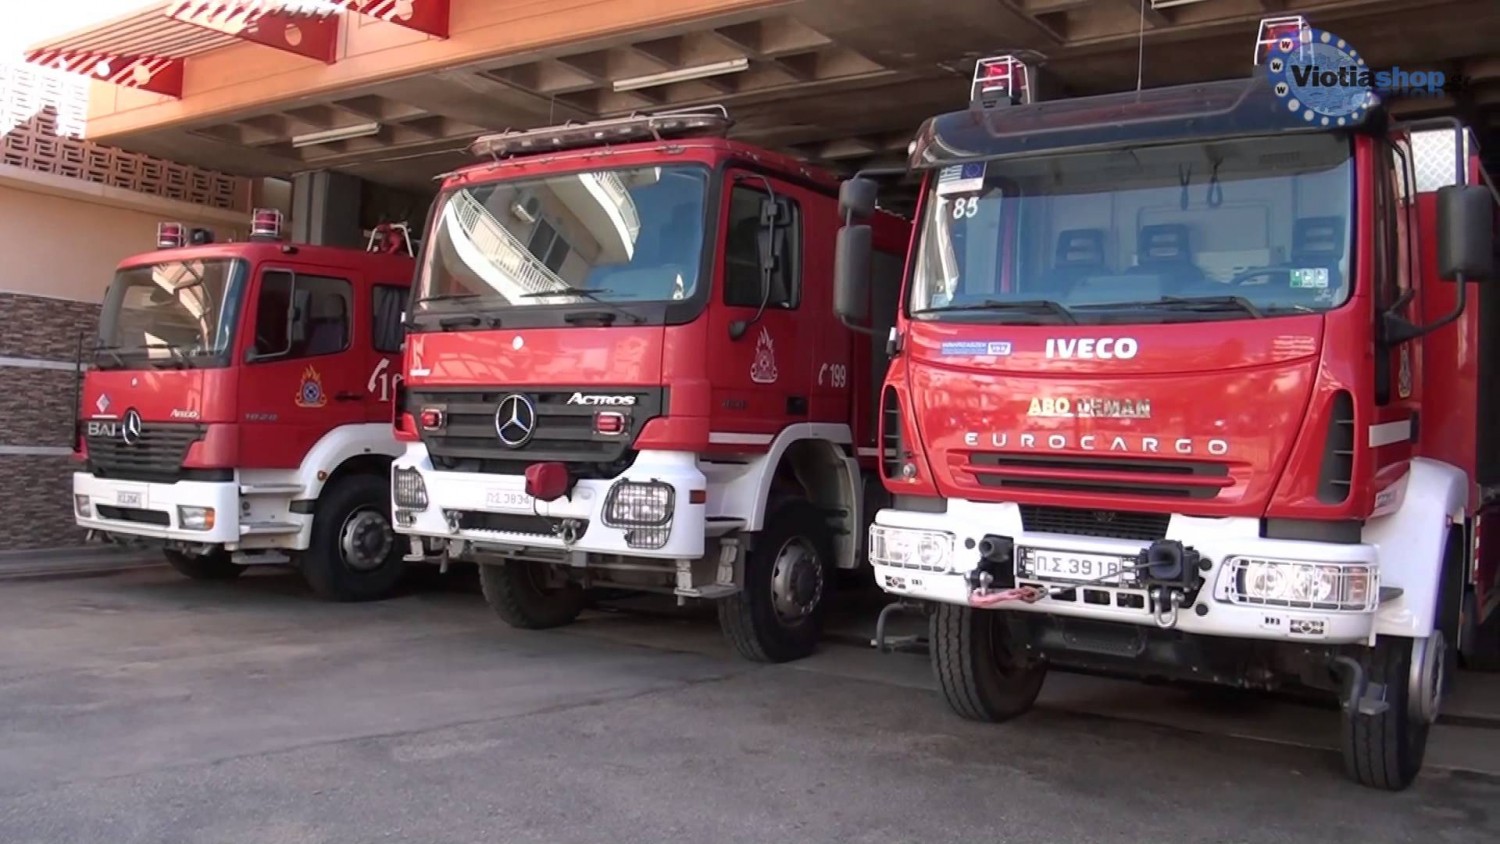 Σε σειρά πυρκαγιών ανταποκρίθηκε το τελευταίο 24ωρο η Πυροσβεστική Υπηρεσία – Στη Λάρνακα χθες σε διαμέρισμα